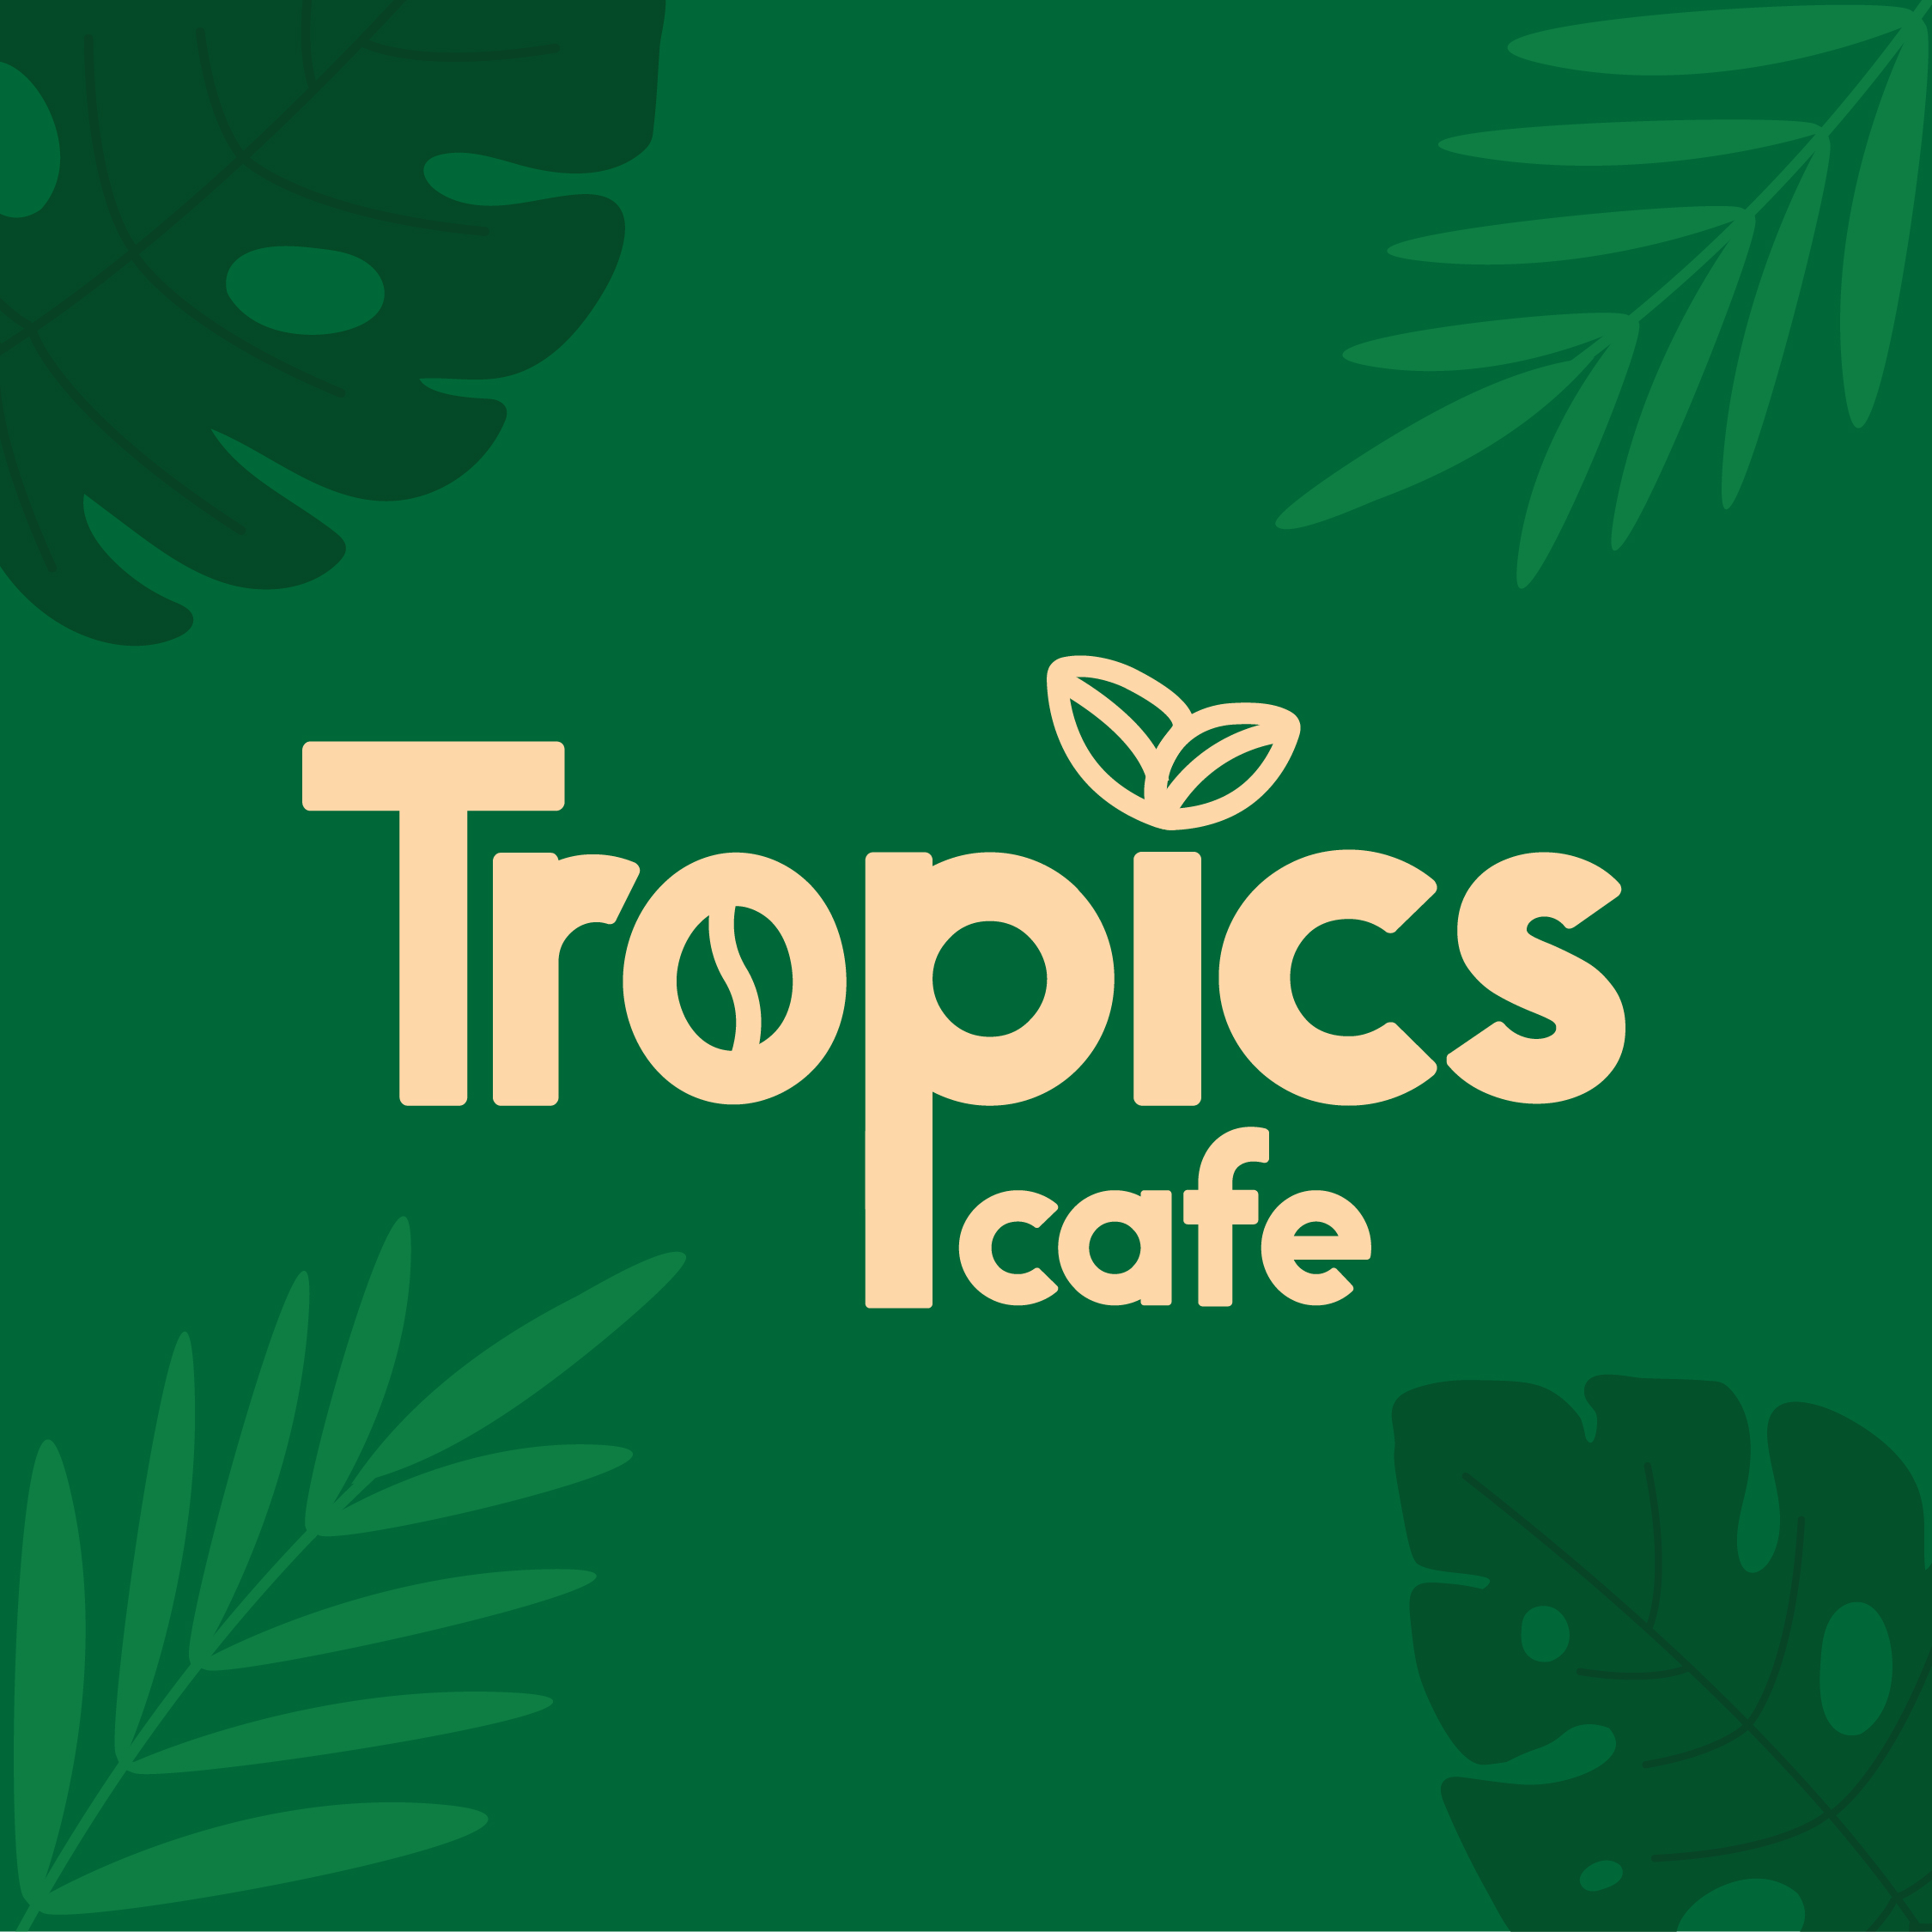 Tropics cafe LOGO